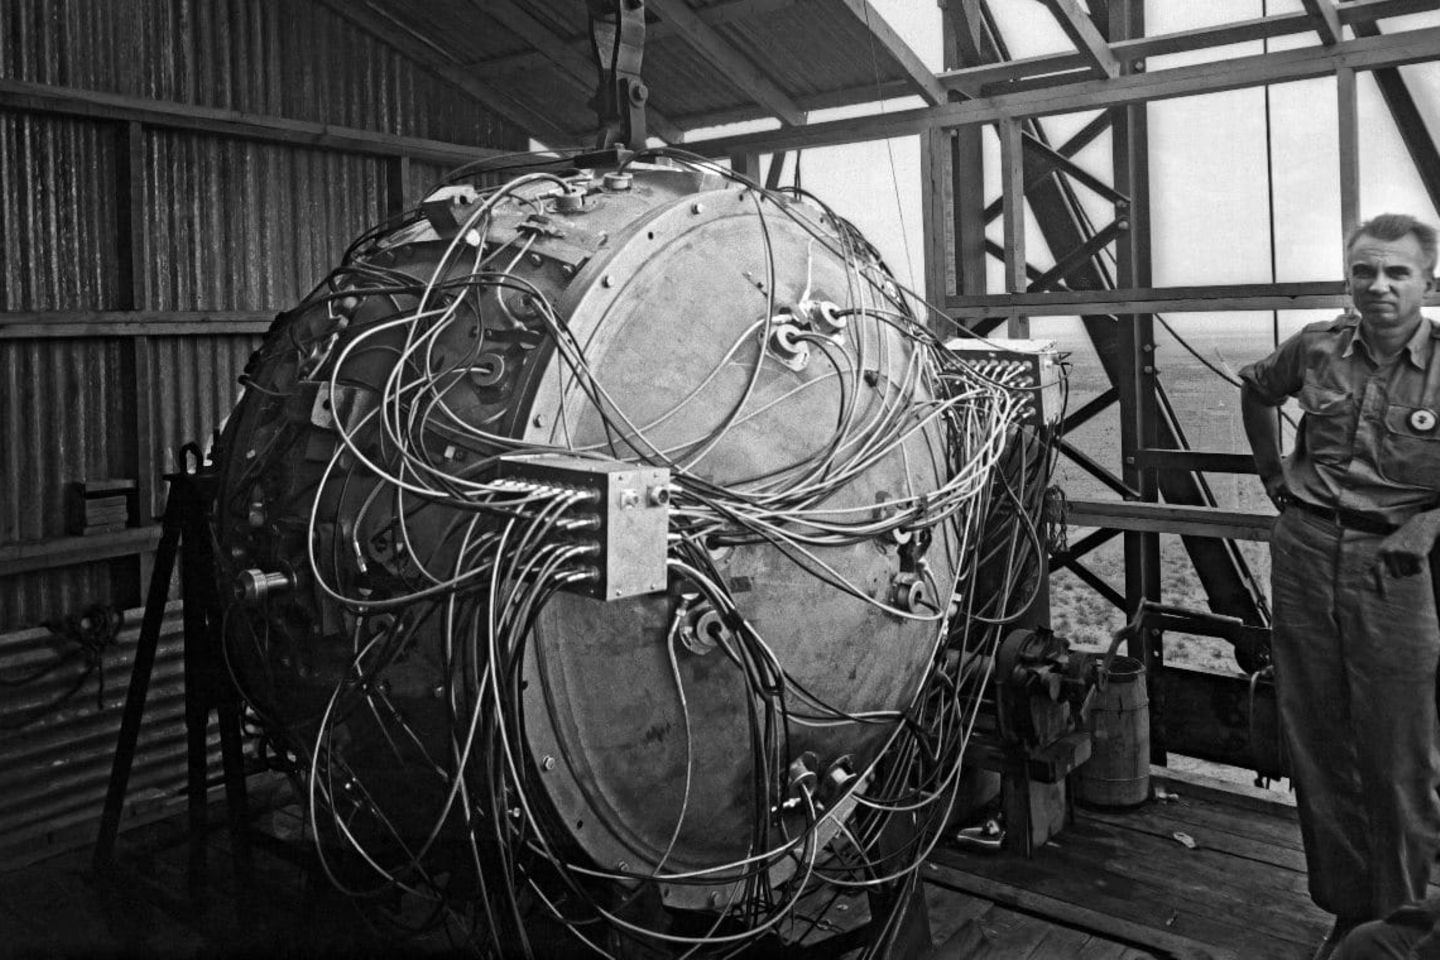 Im Trinity Test in der Wüste New Mexicos zündete das Manhattan Project die erste Atombombe